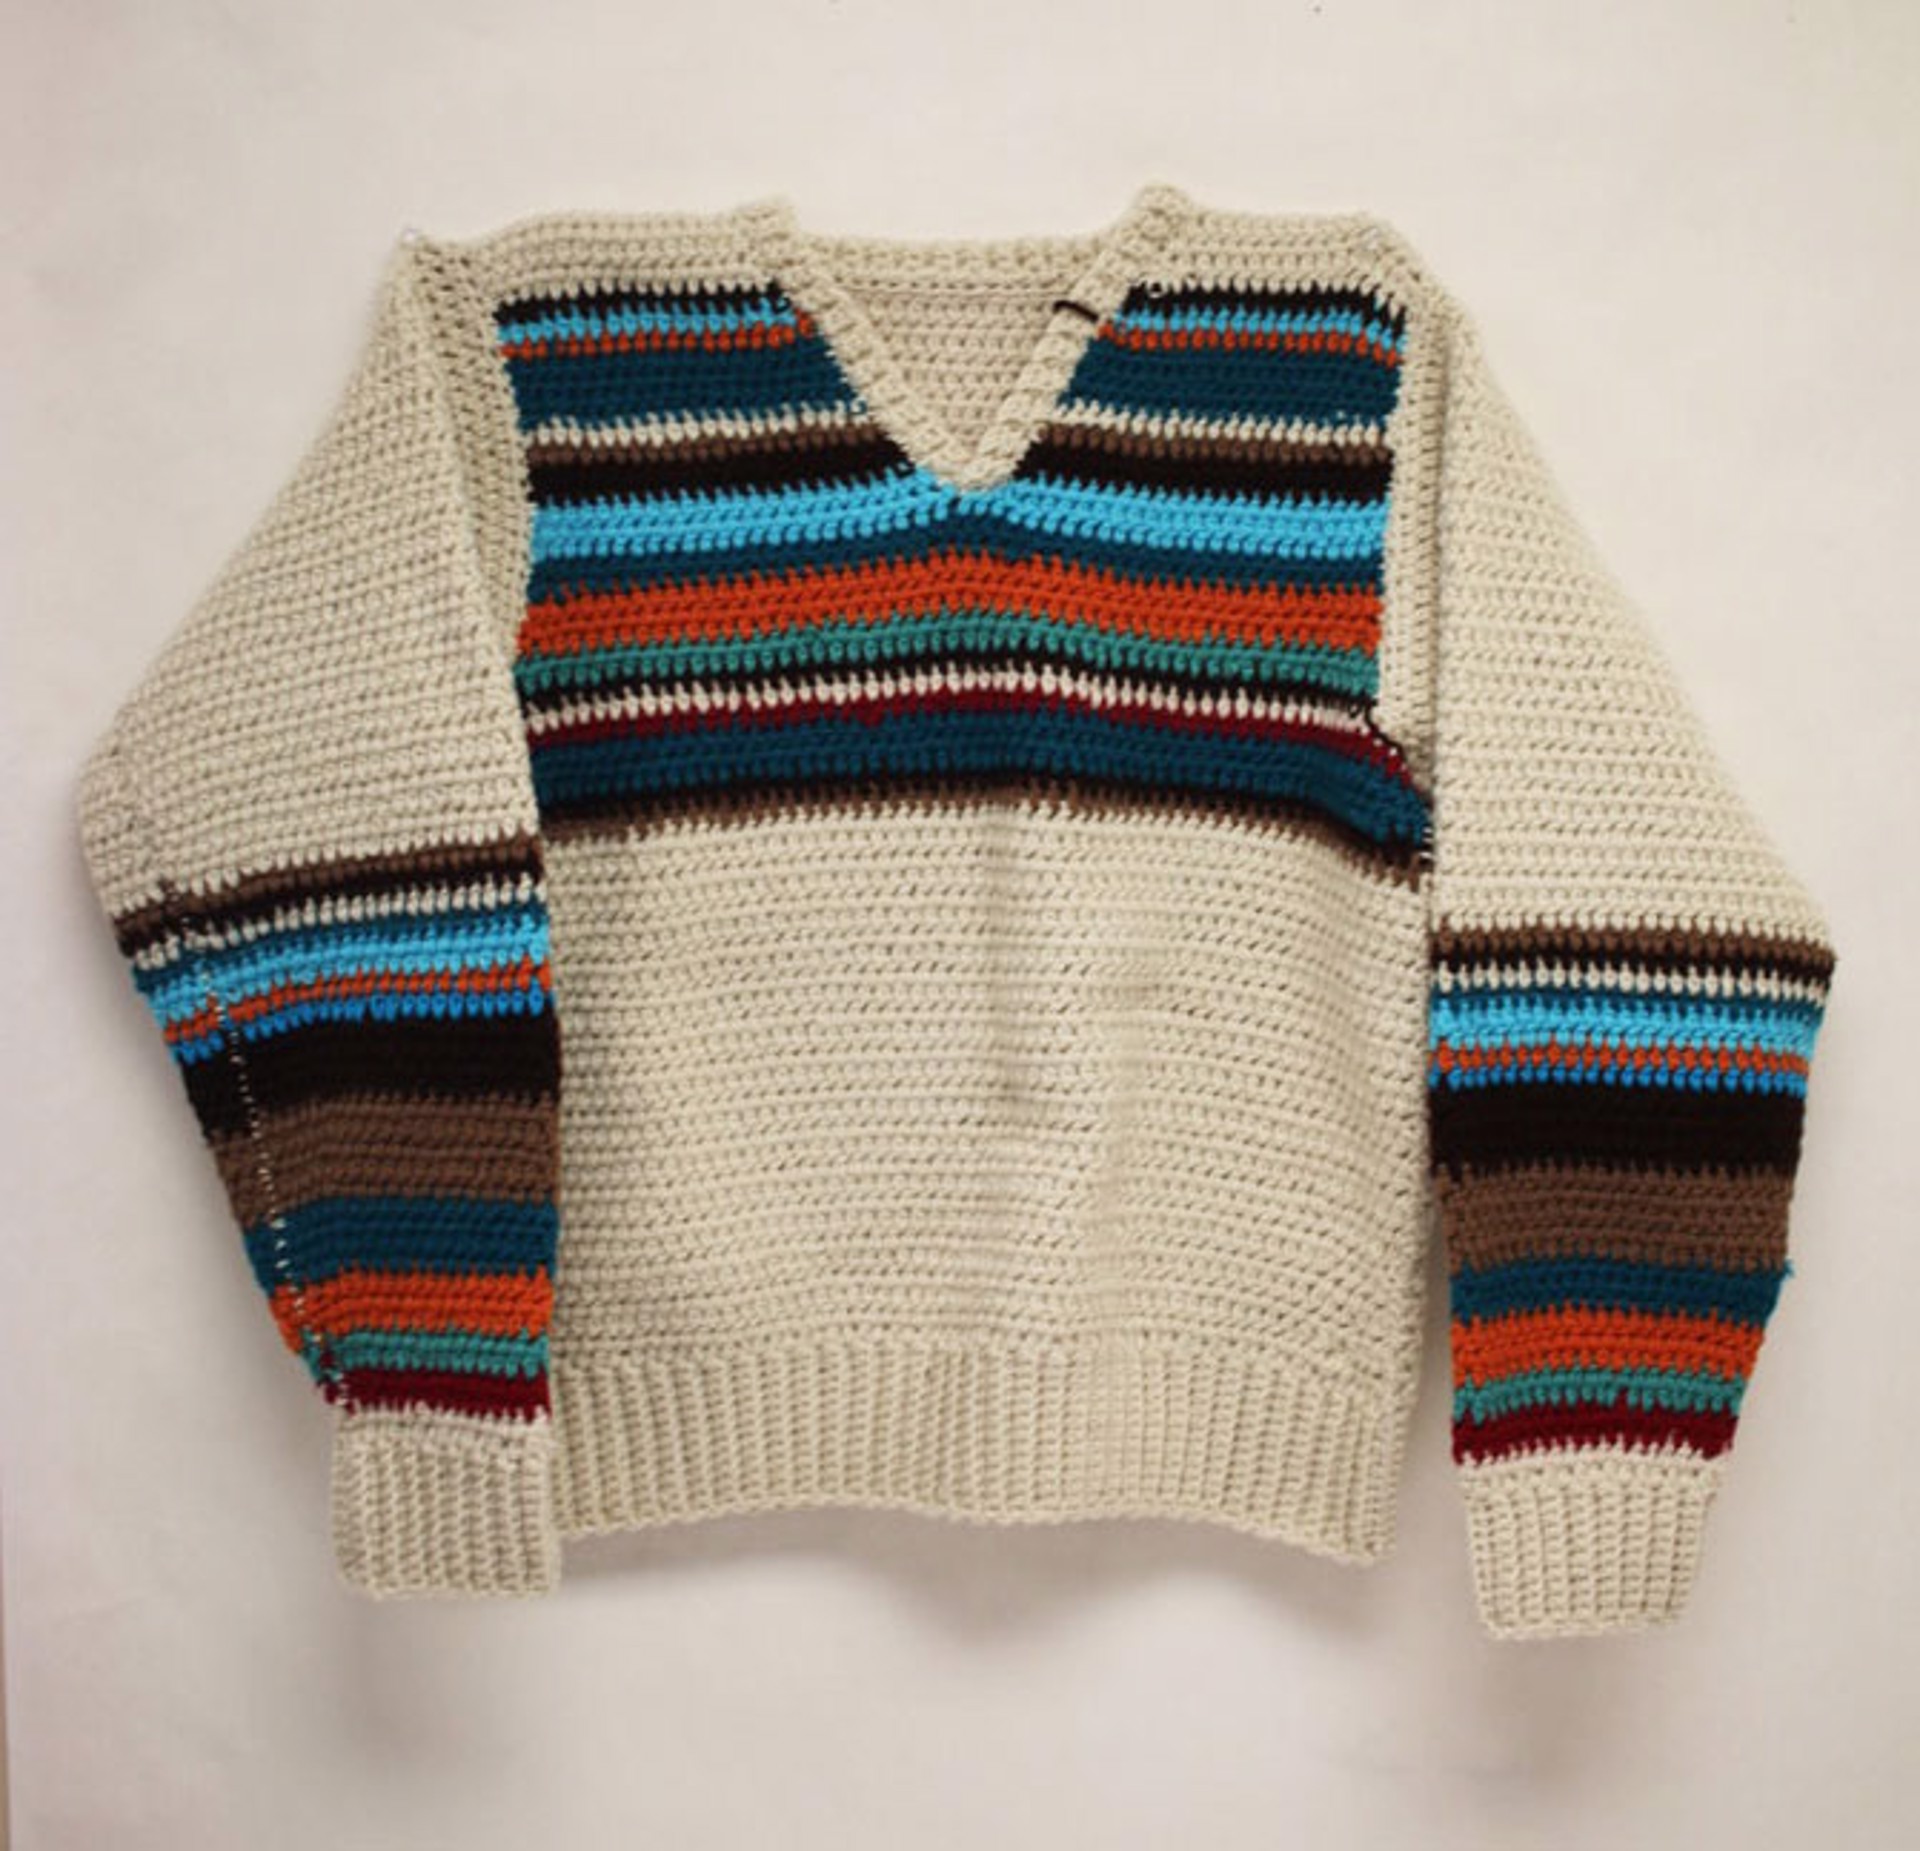 Apres Ski (sweater) by Rachel Niemeyer